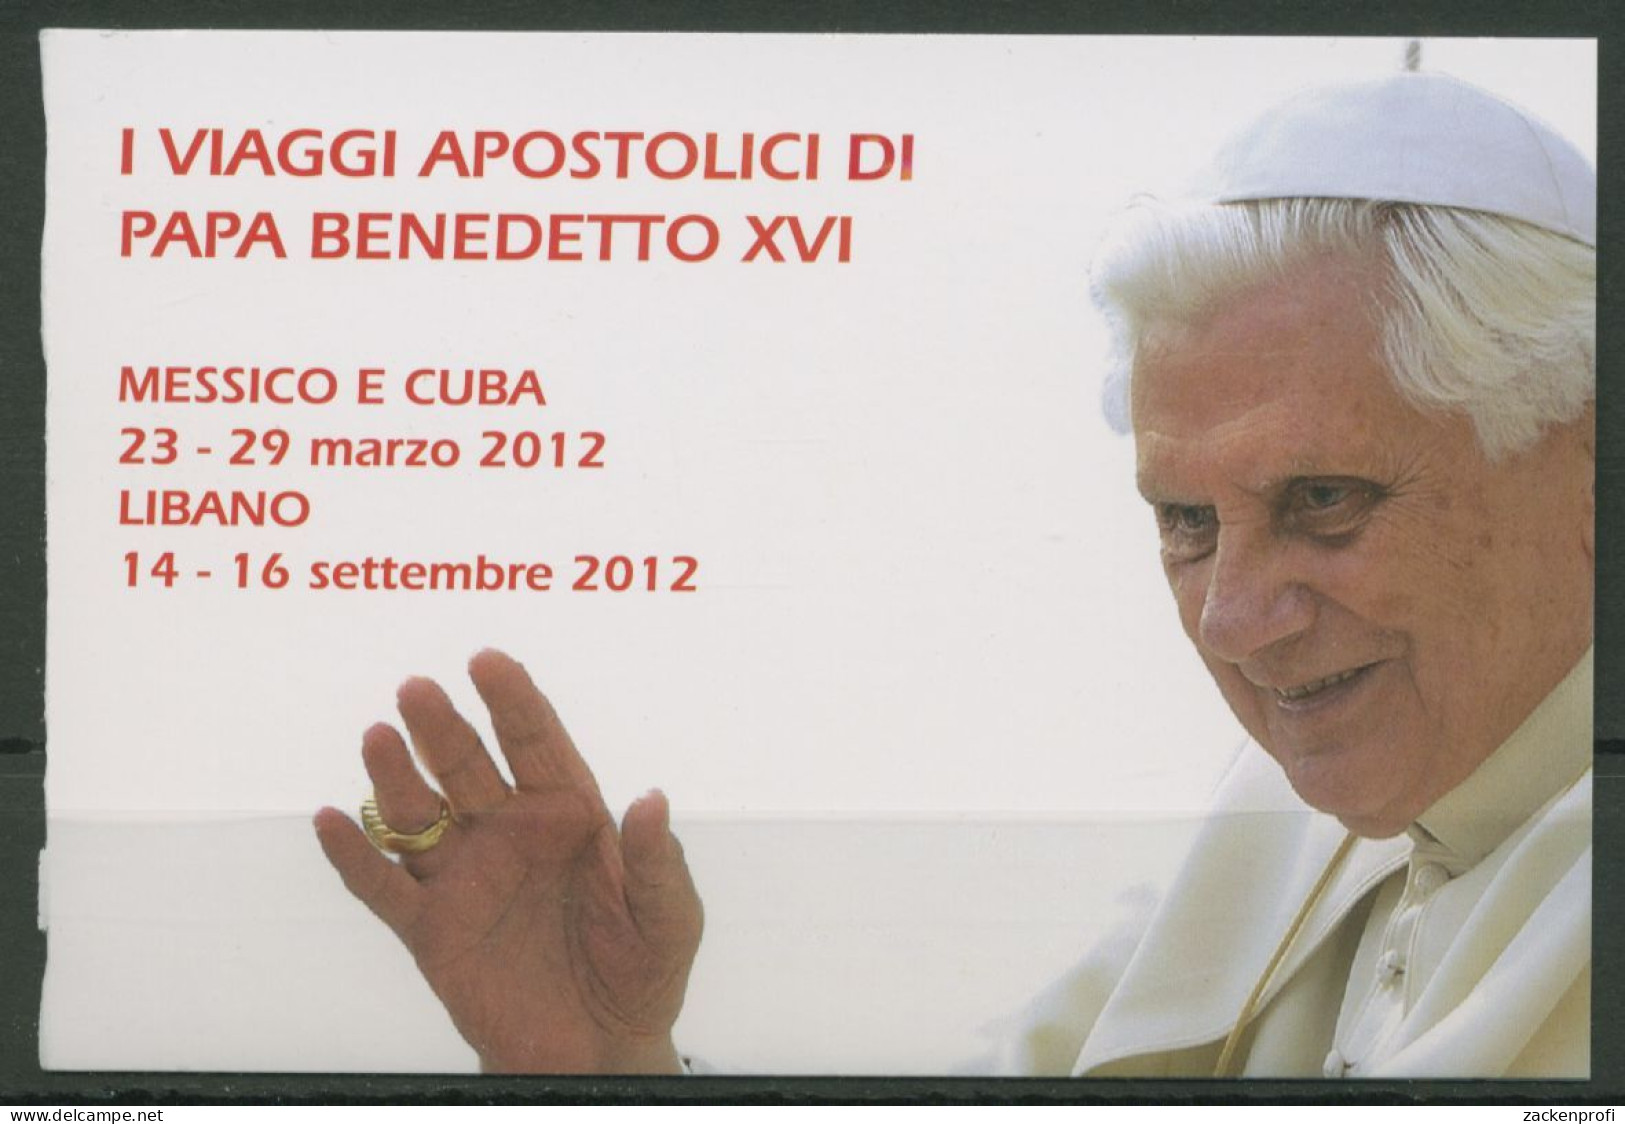 Vatikan 2013 Papst Benedikt XVI. Markenheftchen MH 22 Postfrisch (C63124) - Booklets